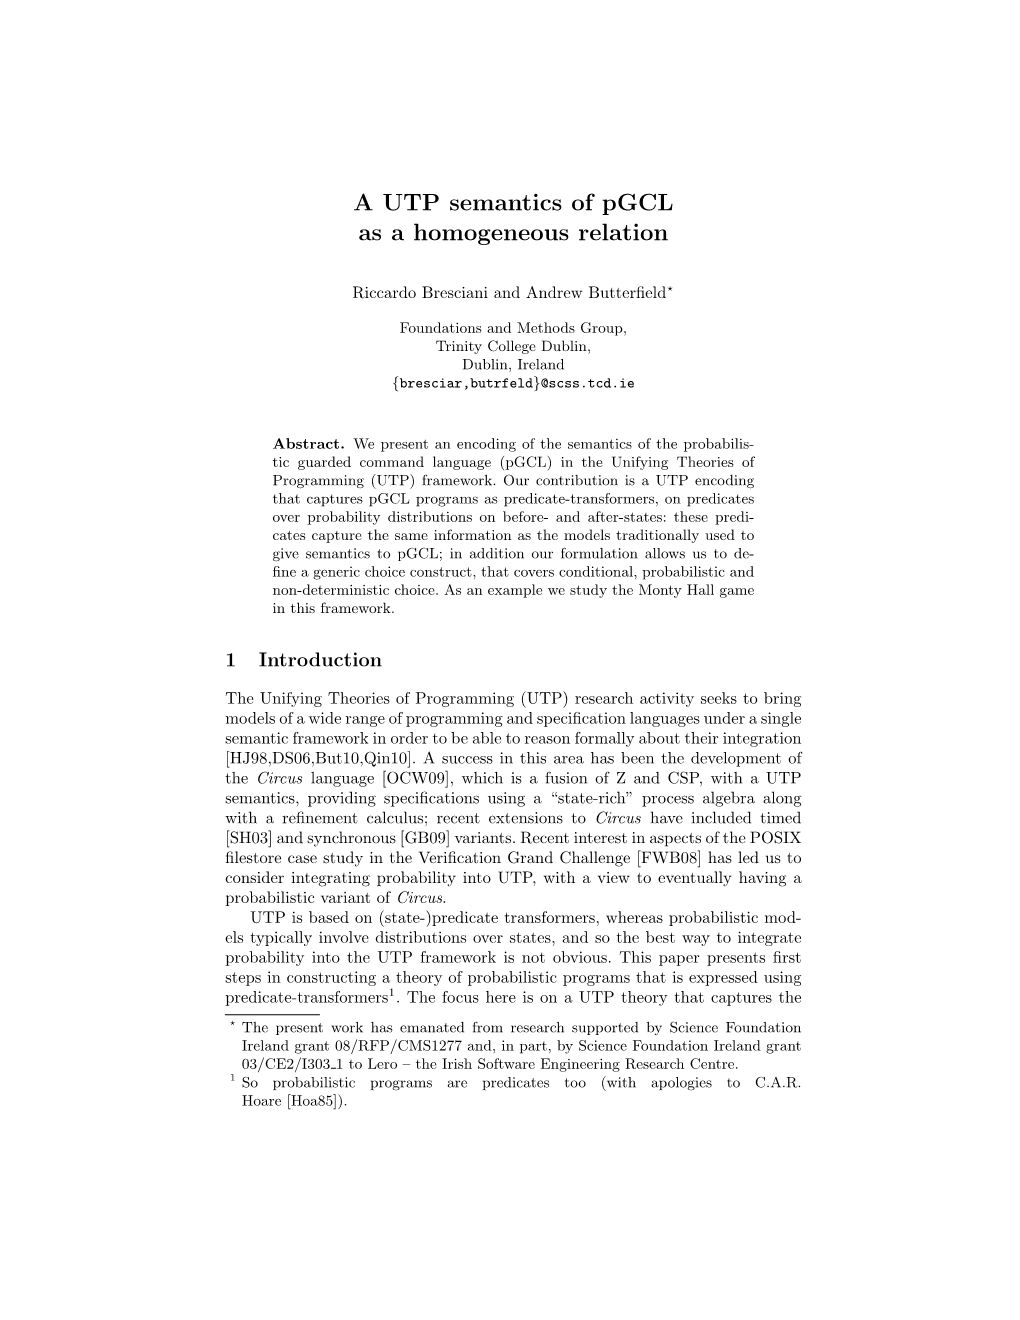 A UTP Semantics of Pgcl As a Homogeneous Relation